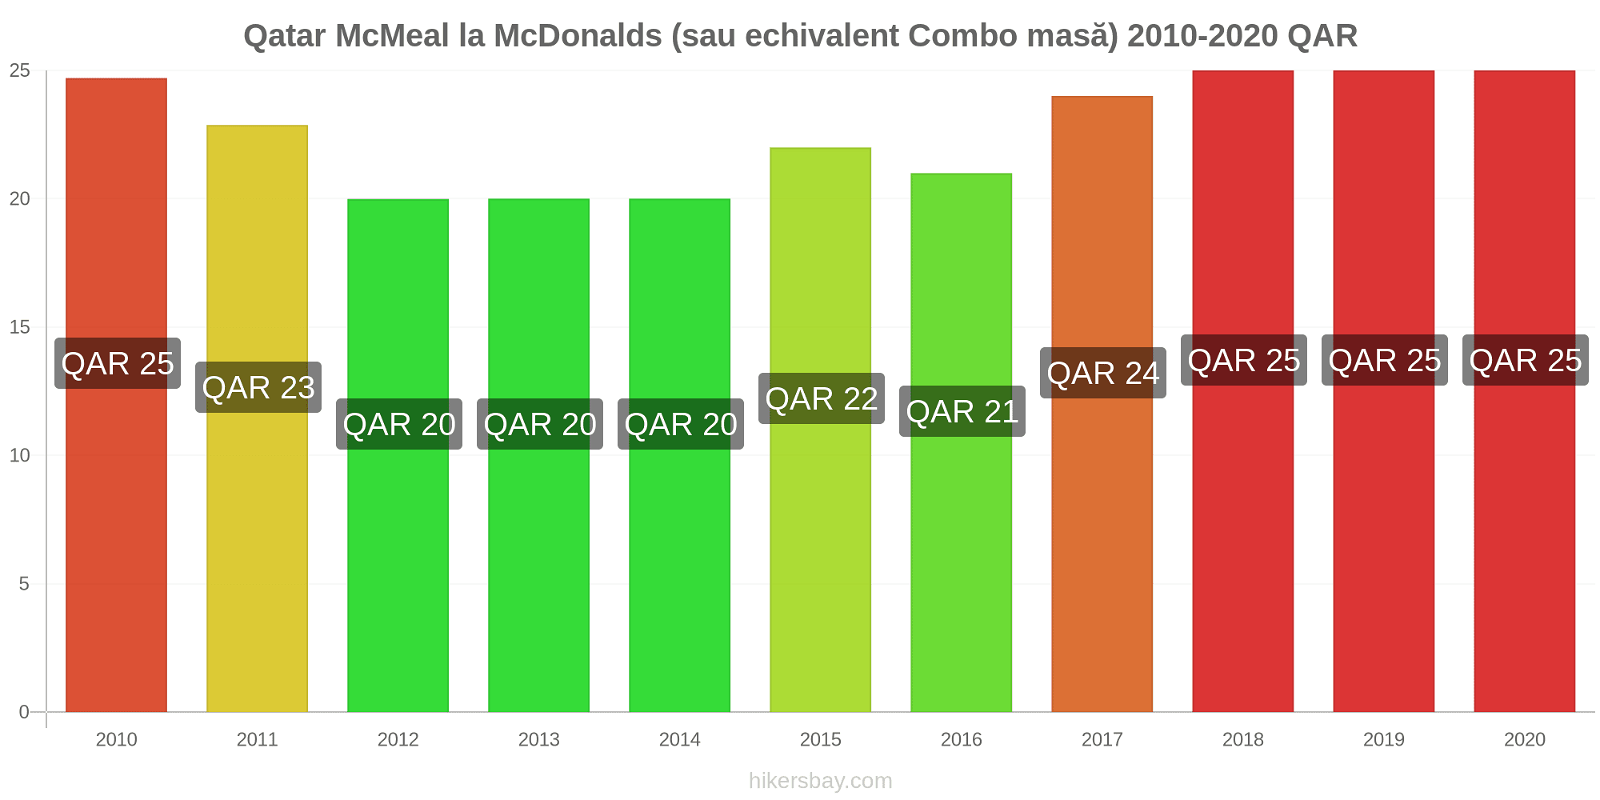 Qatar modificări de preț McMeal la McDonalds (sau echivalent Combo masă) hikersbay.com